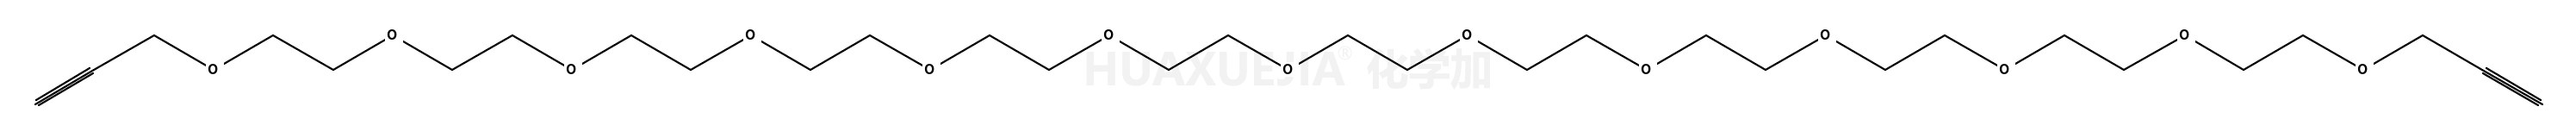 丙炔基-十三聚乙二醇-丙炔基